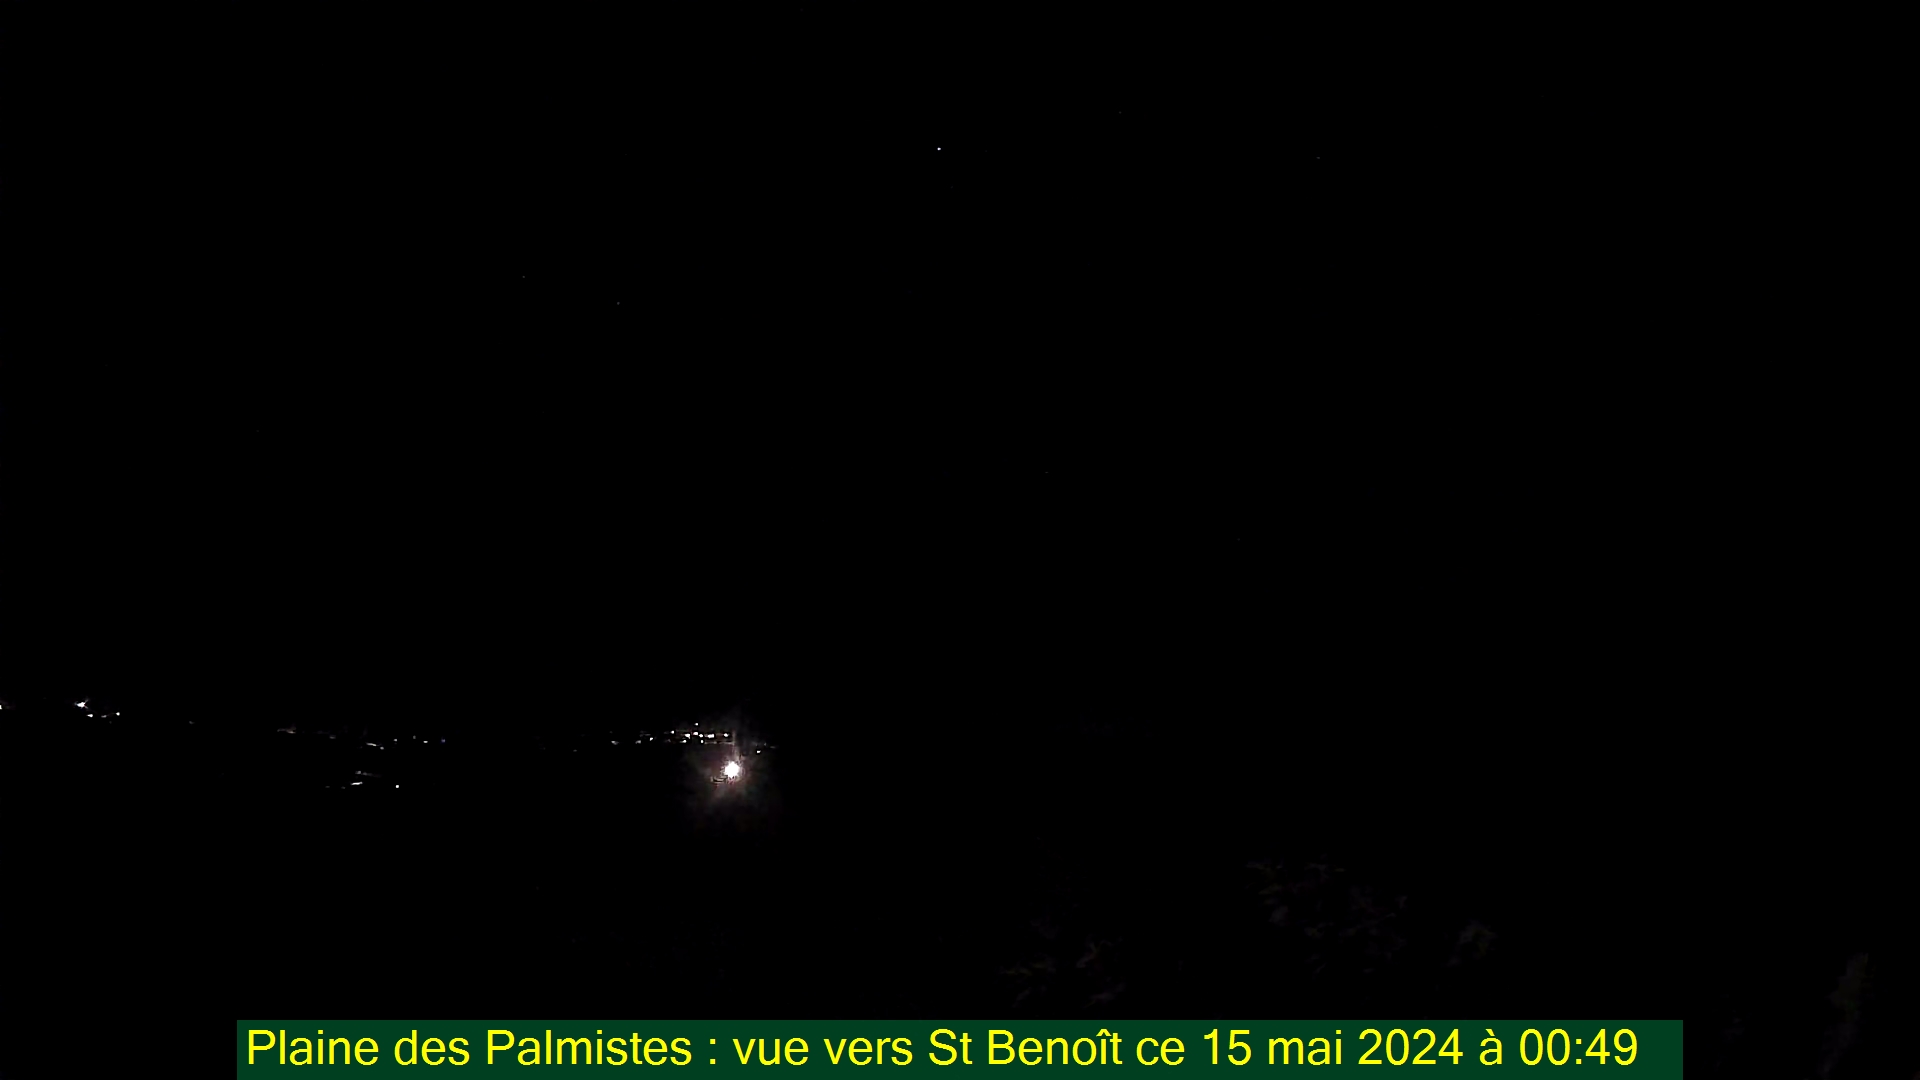 Saint-Denis (Réunion) Søn. 00:50